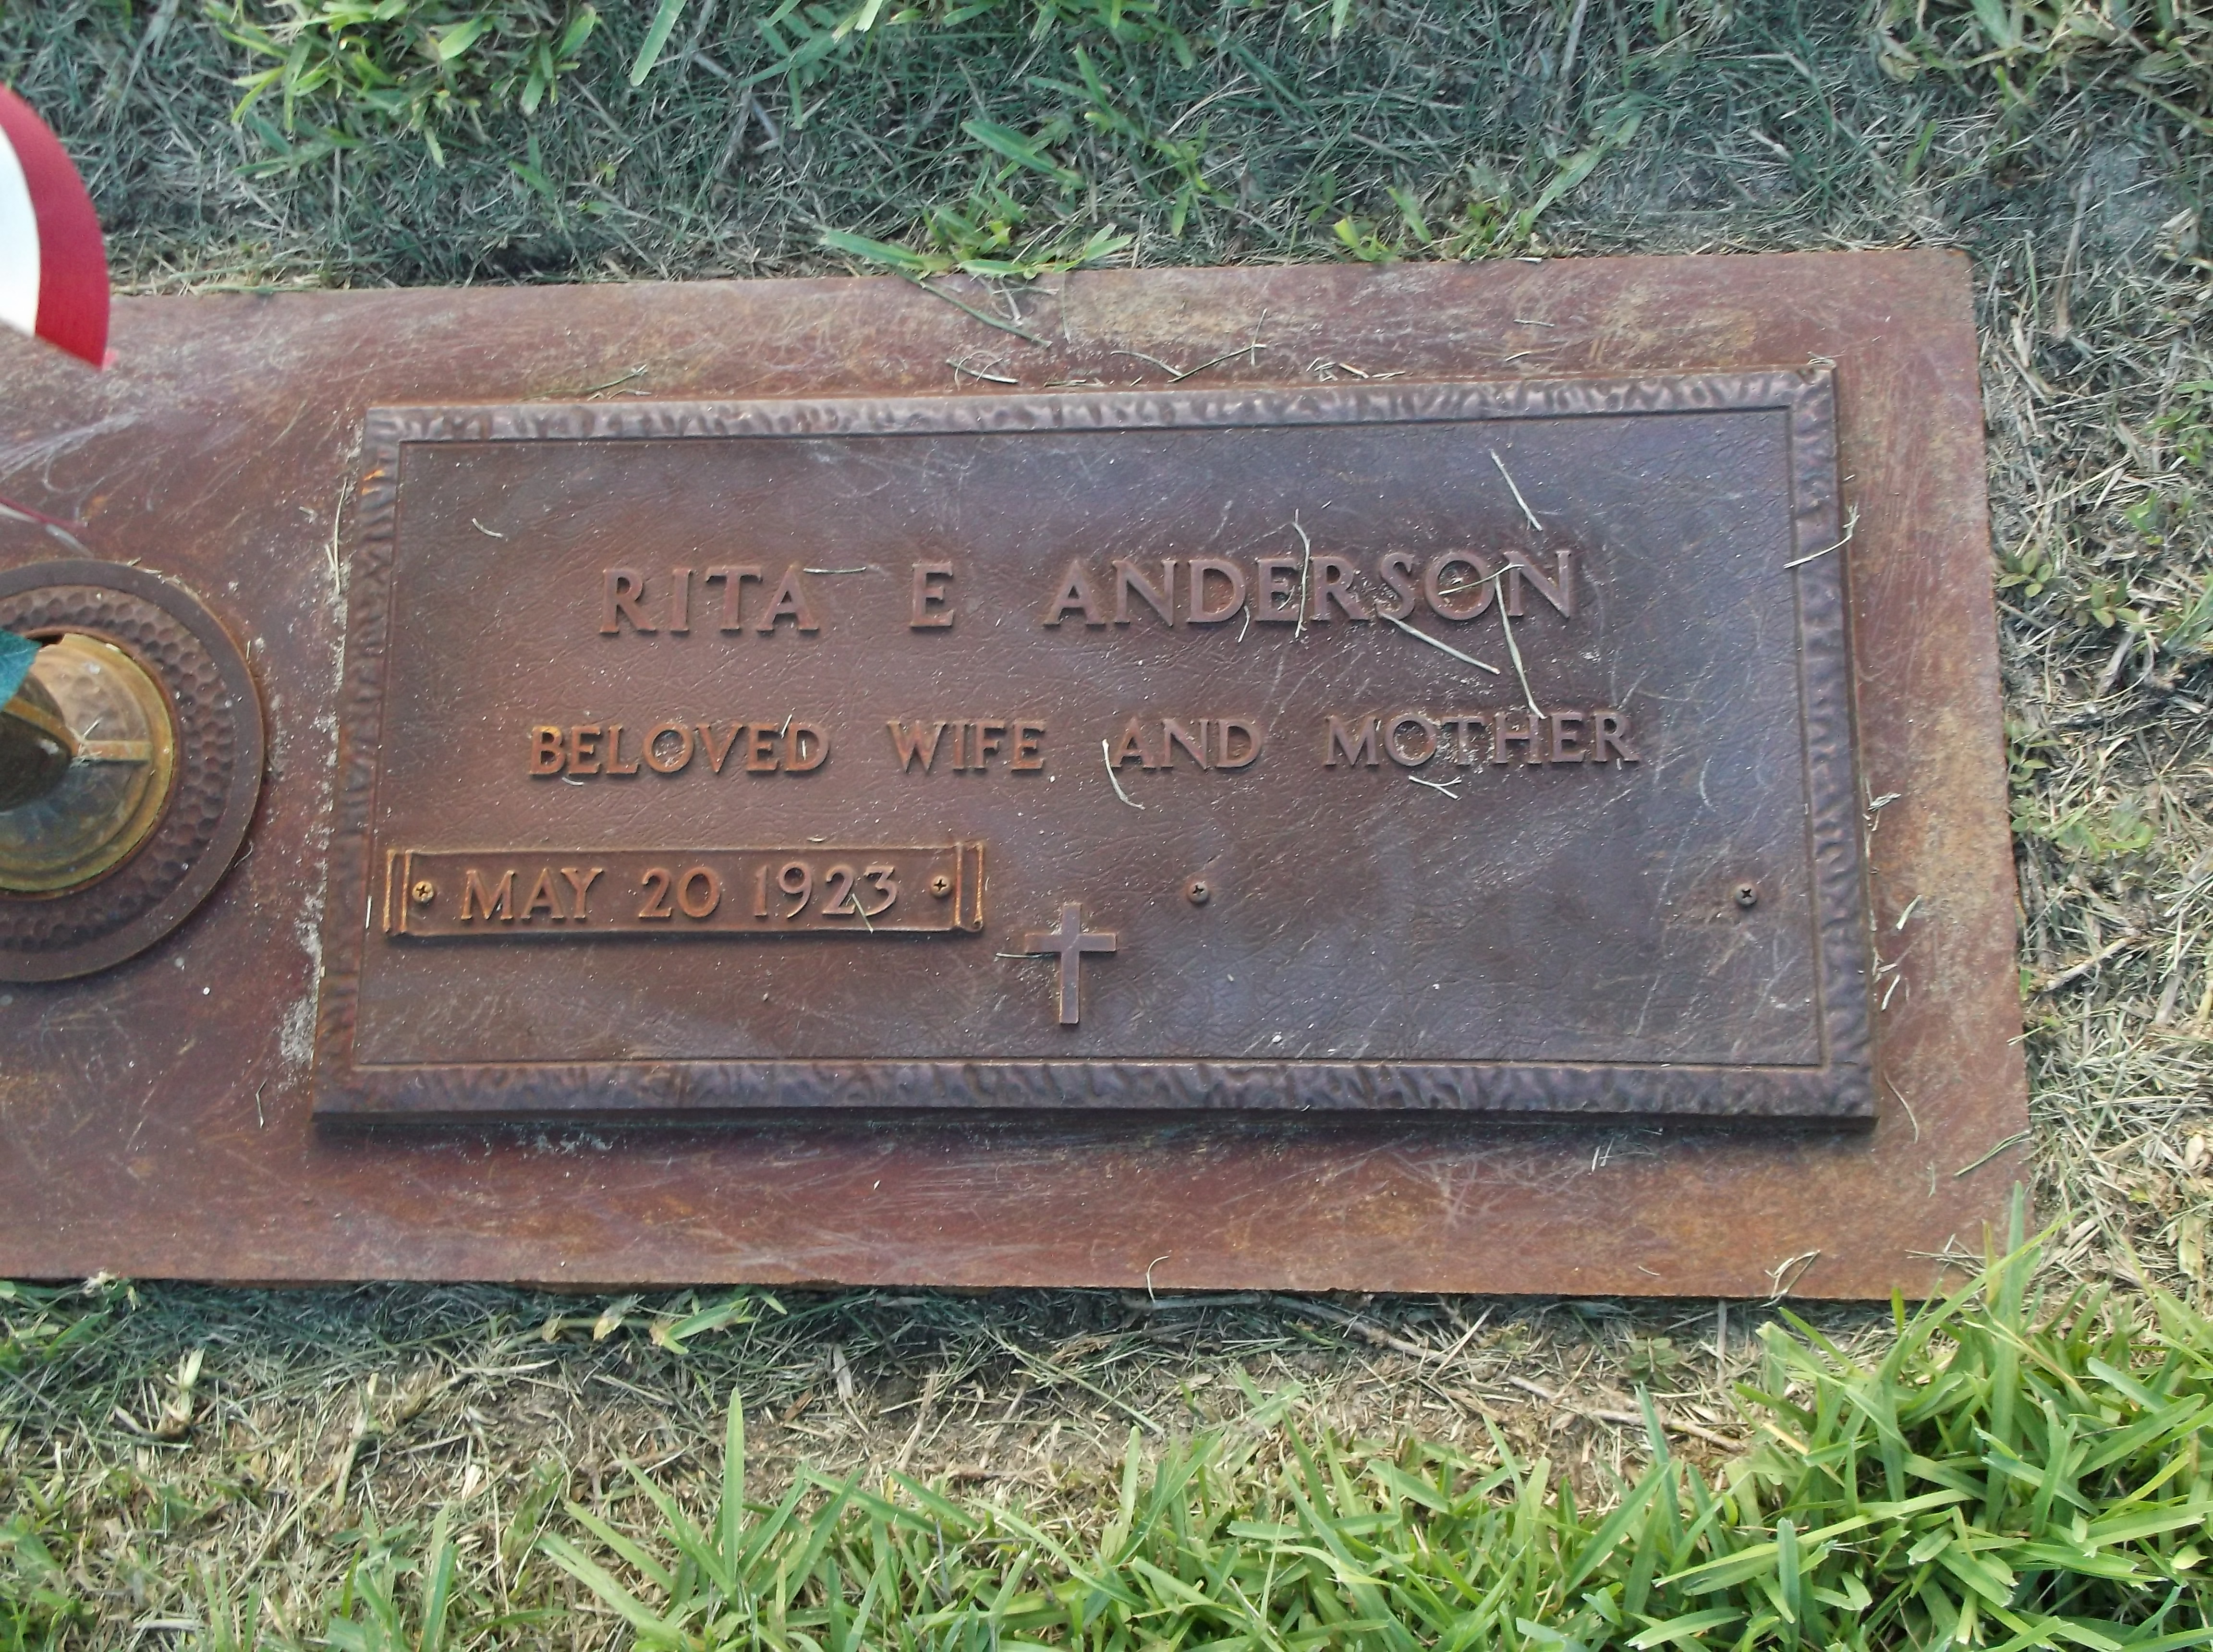 Rita E Anderson